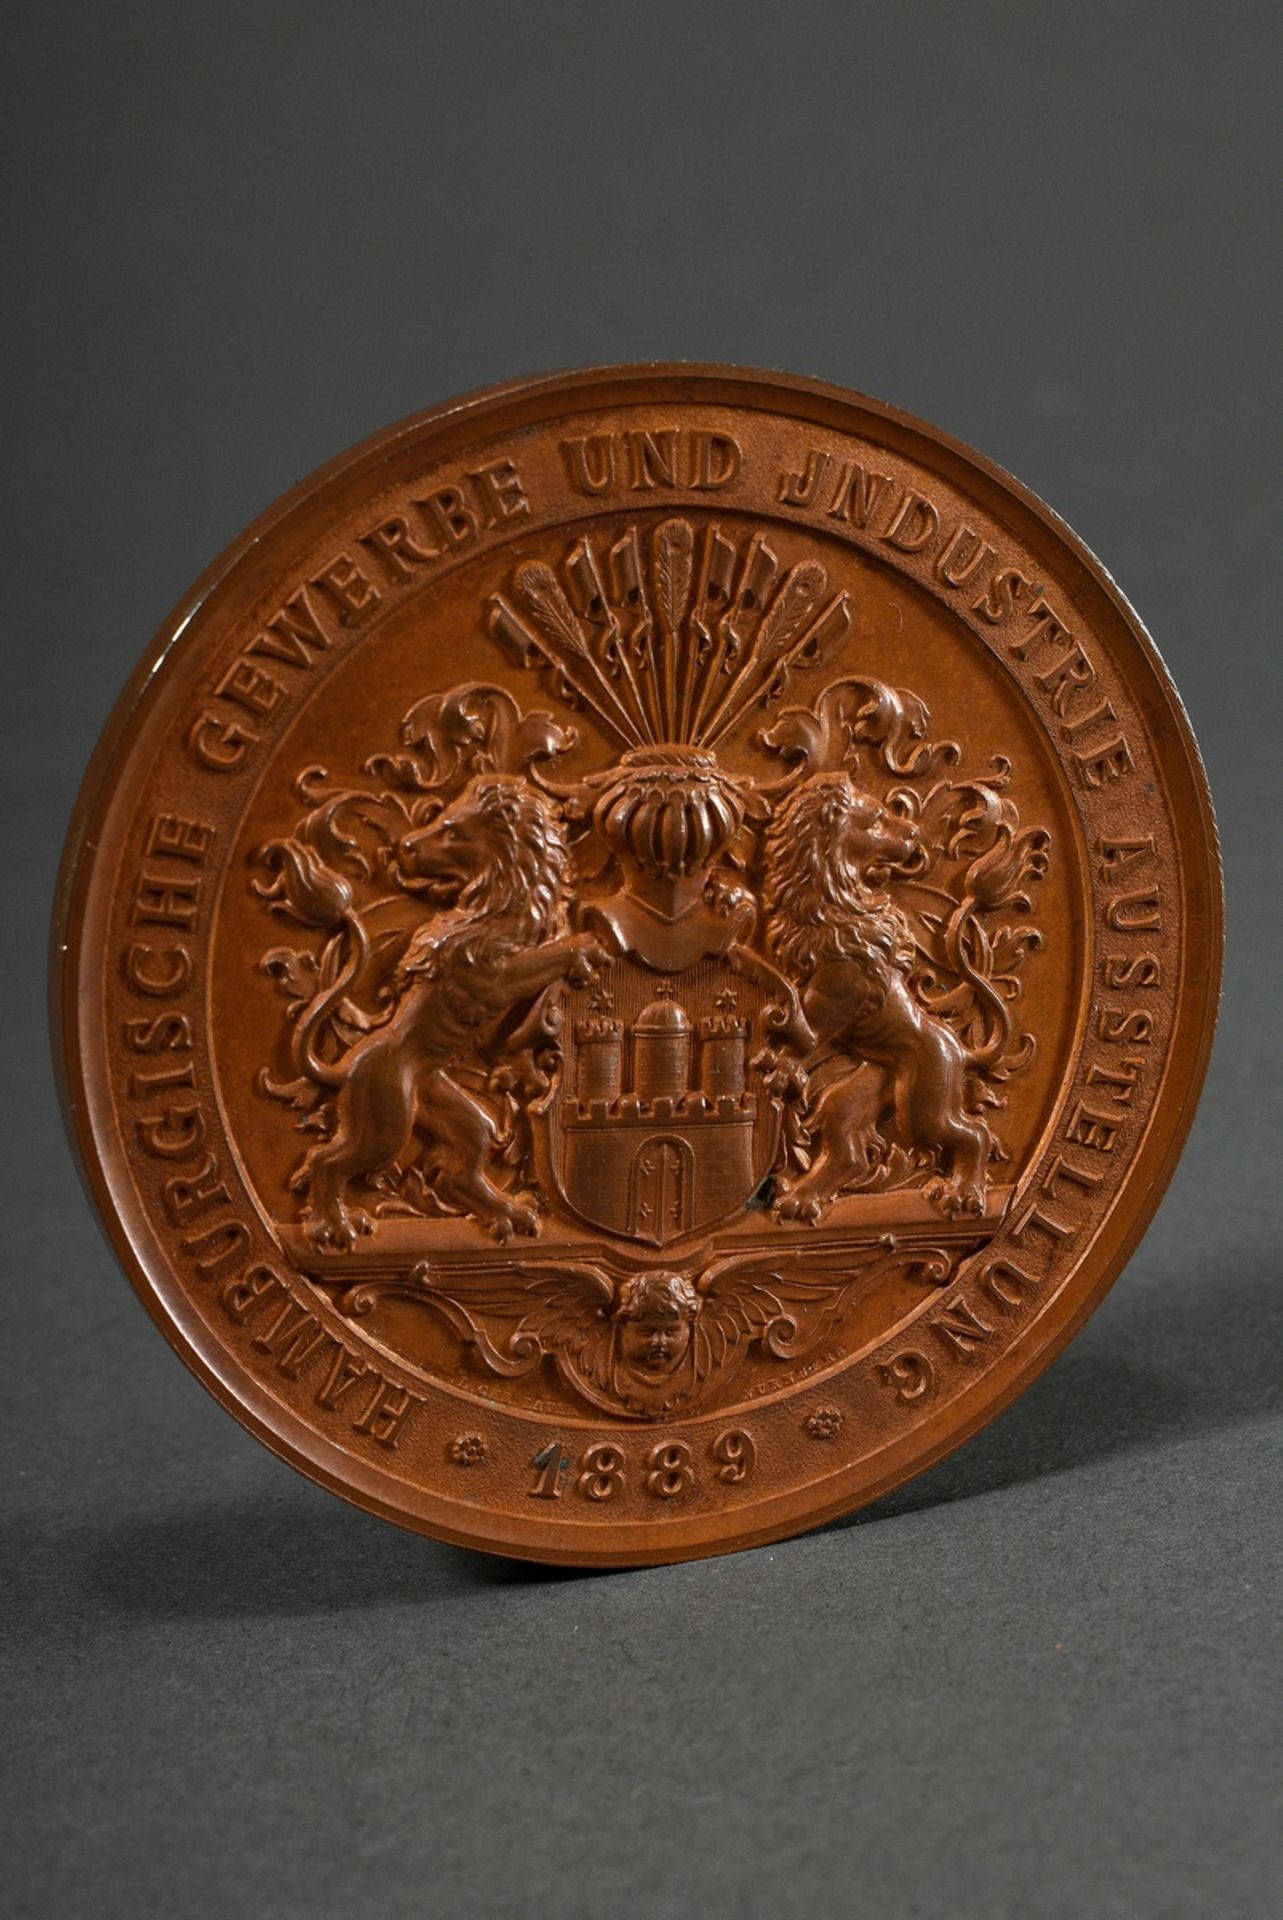 Bronze Medaille 1889, von Chr. Lauer/Nürnberg "Preismedaille der Gewerbe- und Industrieausstellung" - Bild 2 aus 3